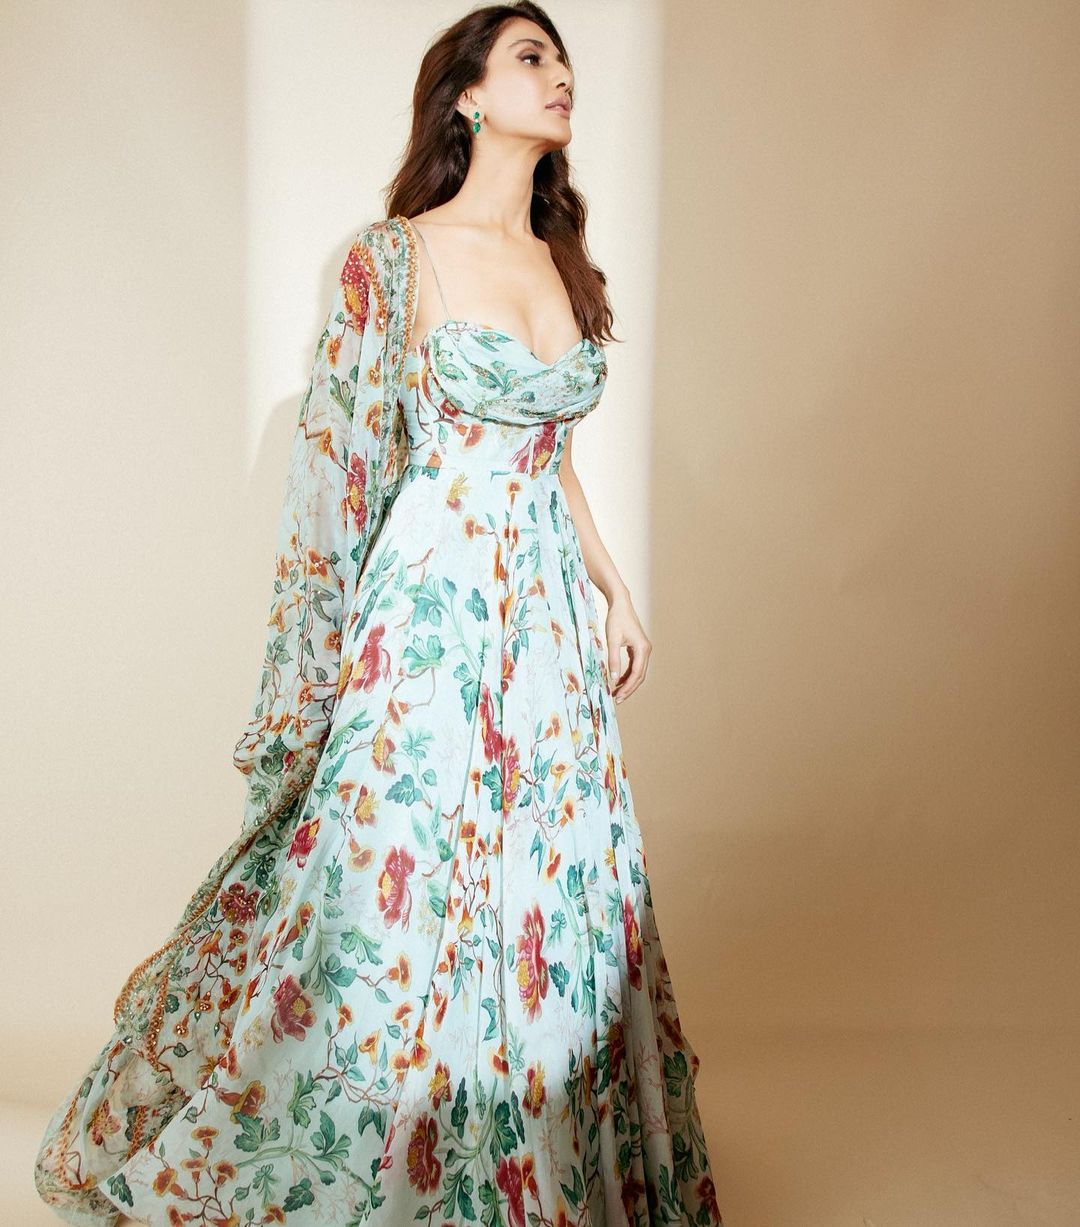 Vaani Kapoor looks pretty in the floral maxi dress